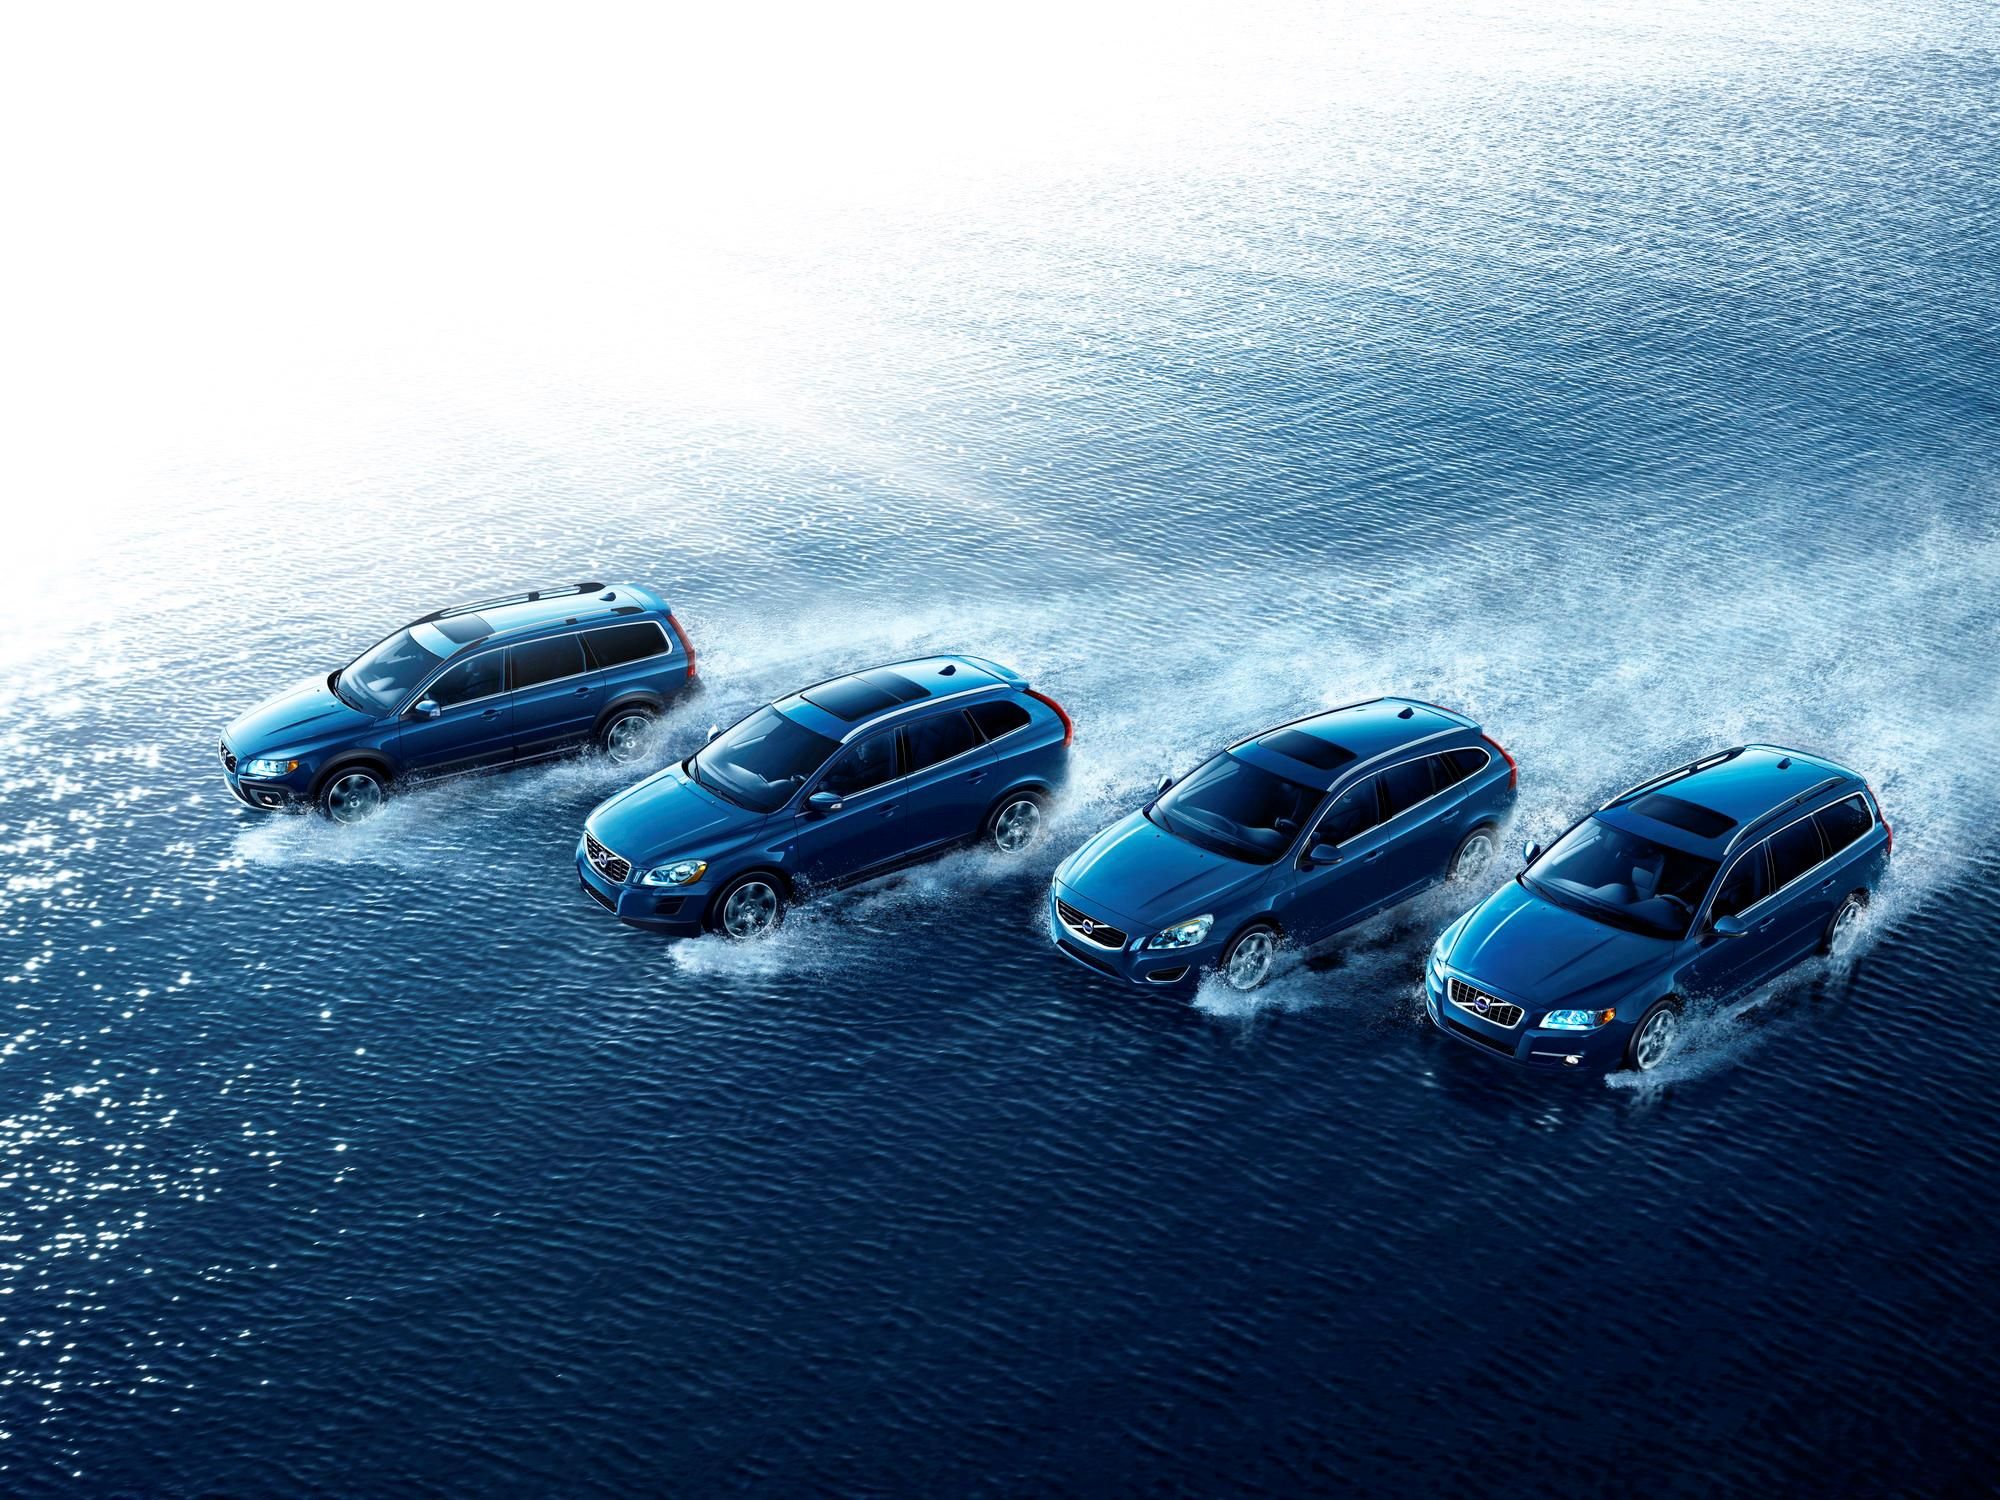 2011 Volvo Ocean Race Edition